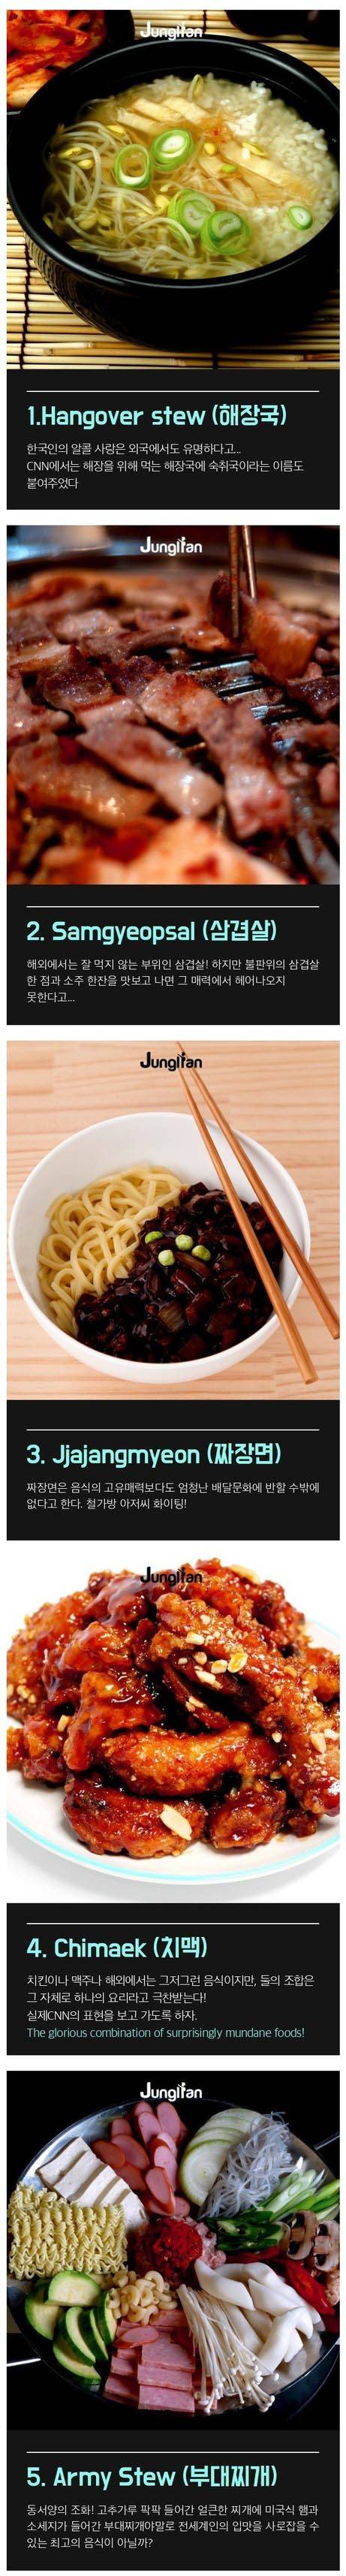 CNN 선정 최고의 한국 음식.jpg